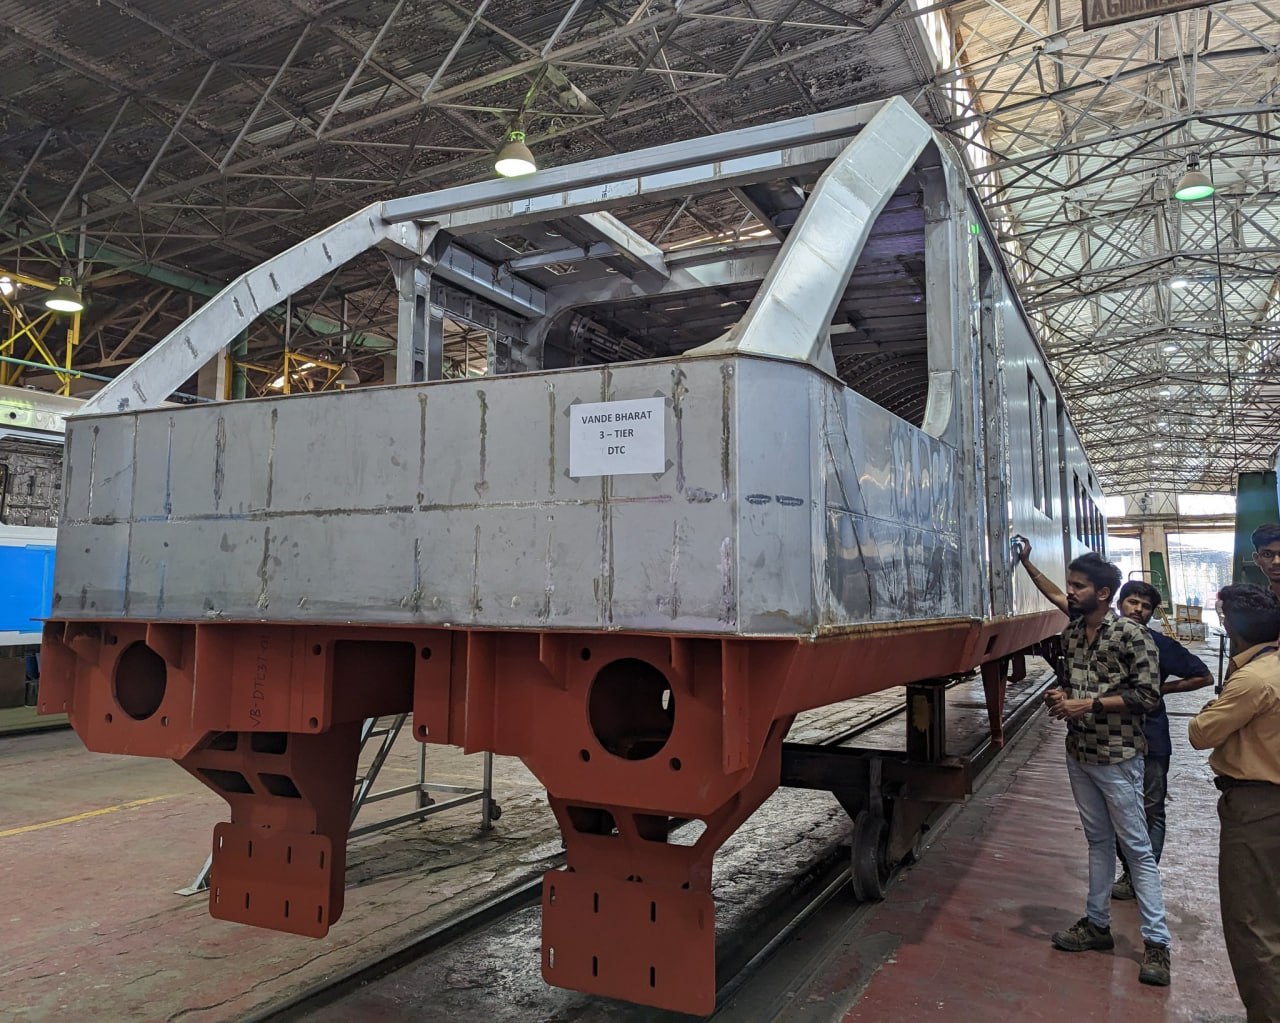 Кузов первого электропоезда Vande Bharat